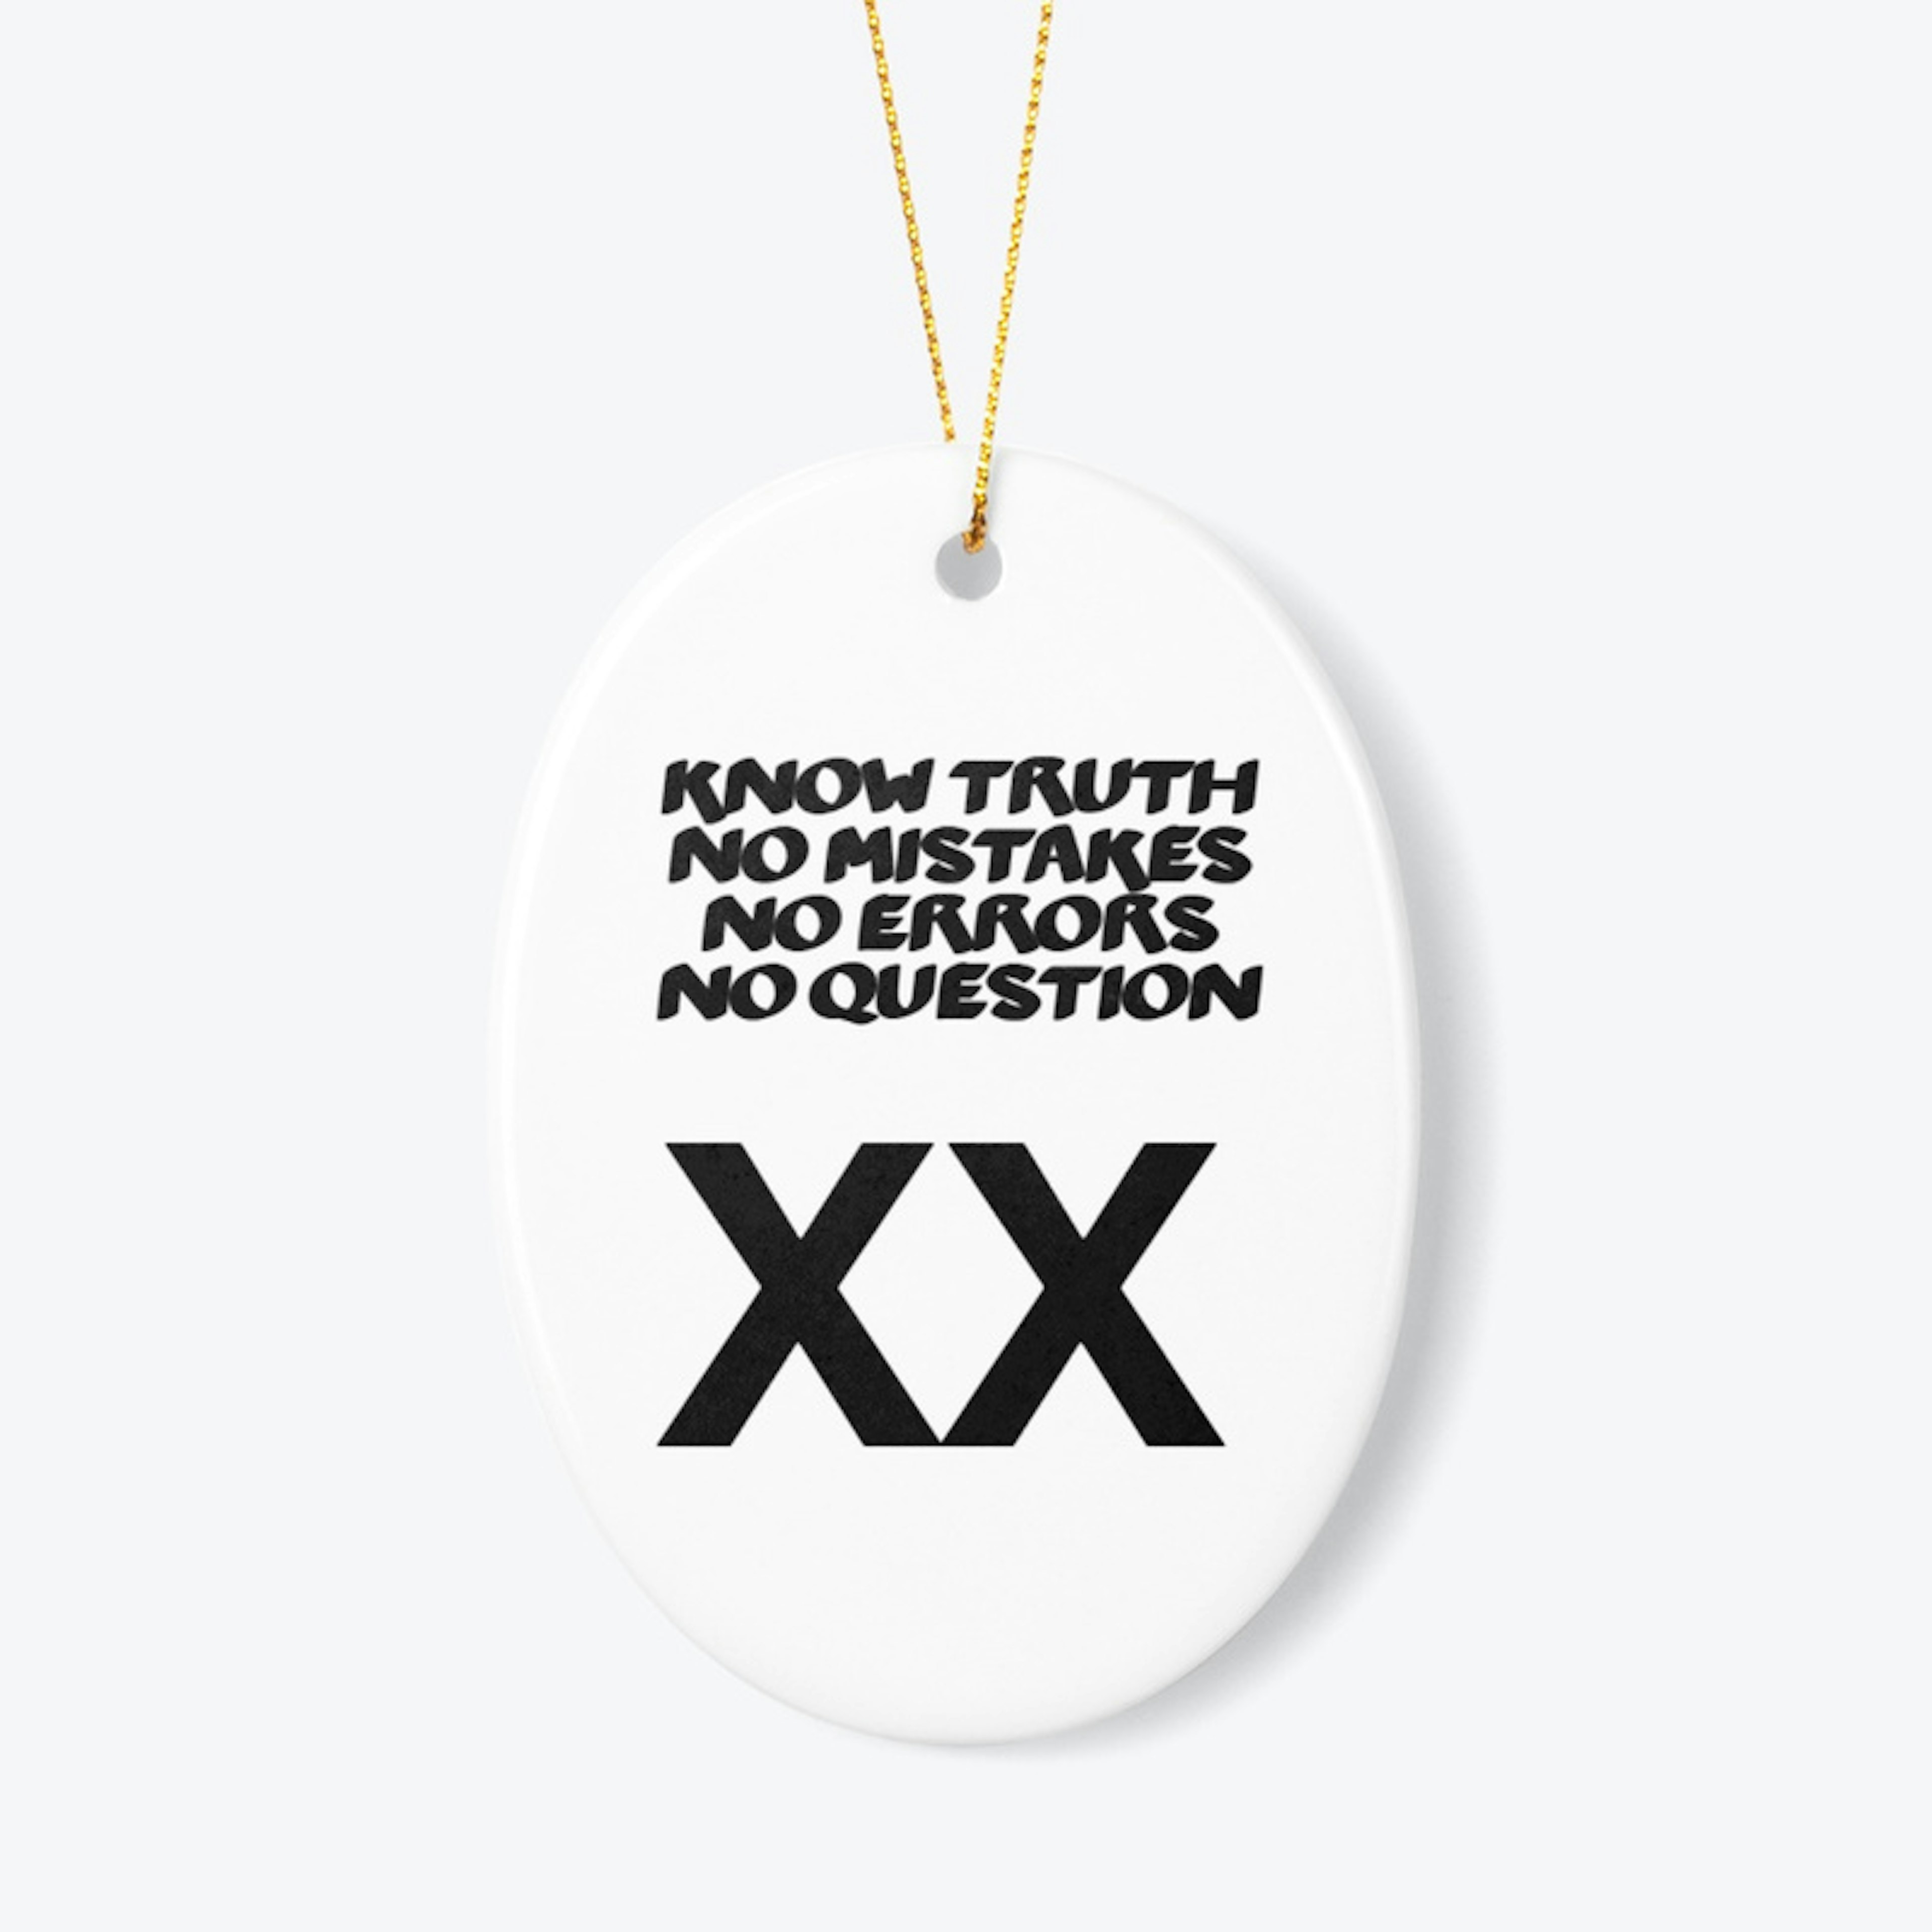 Know Truth XX